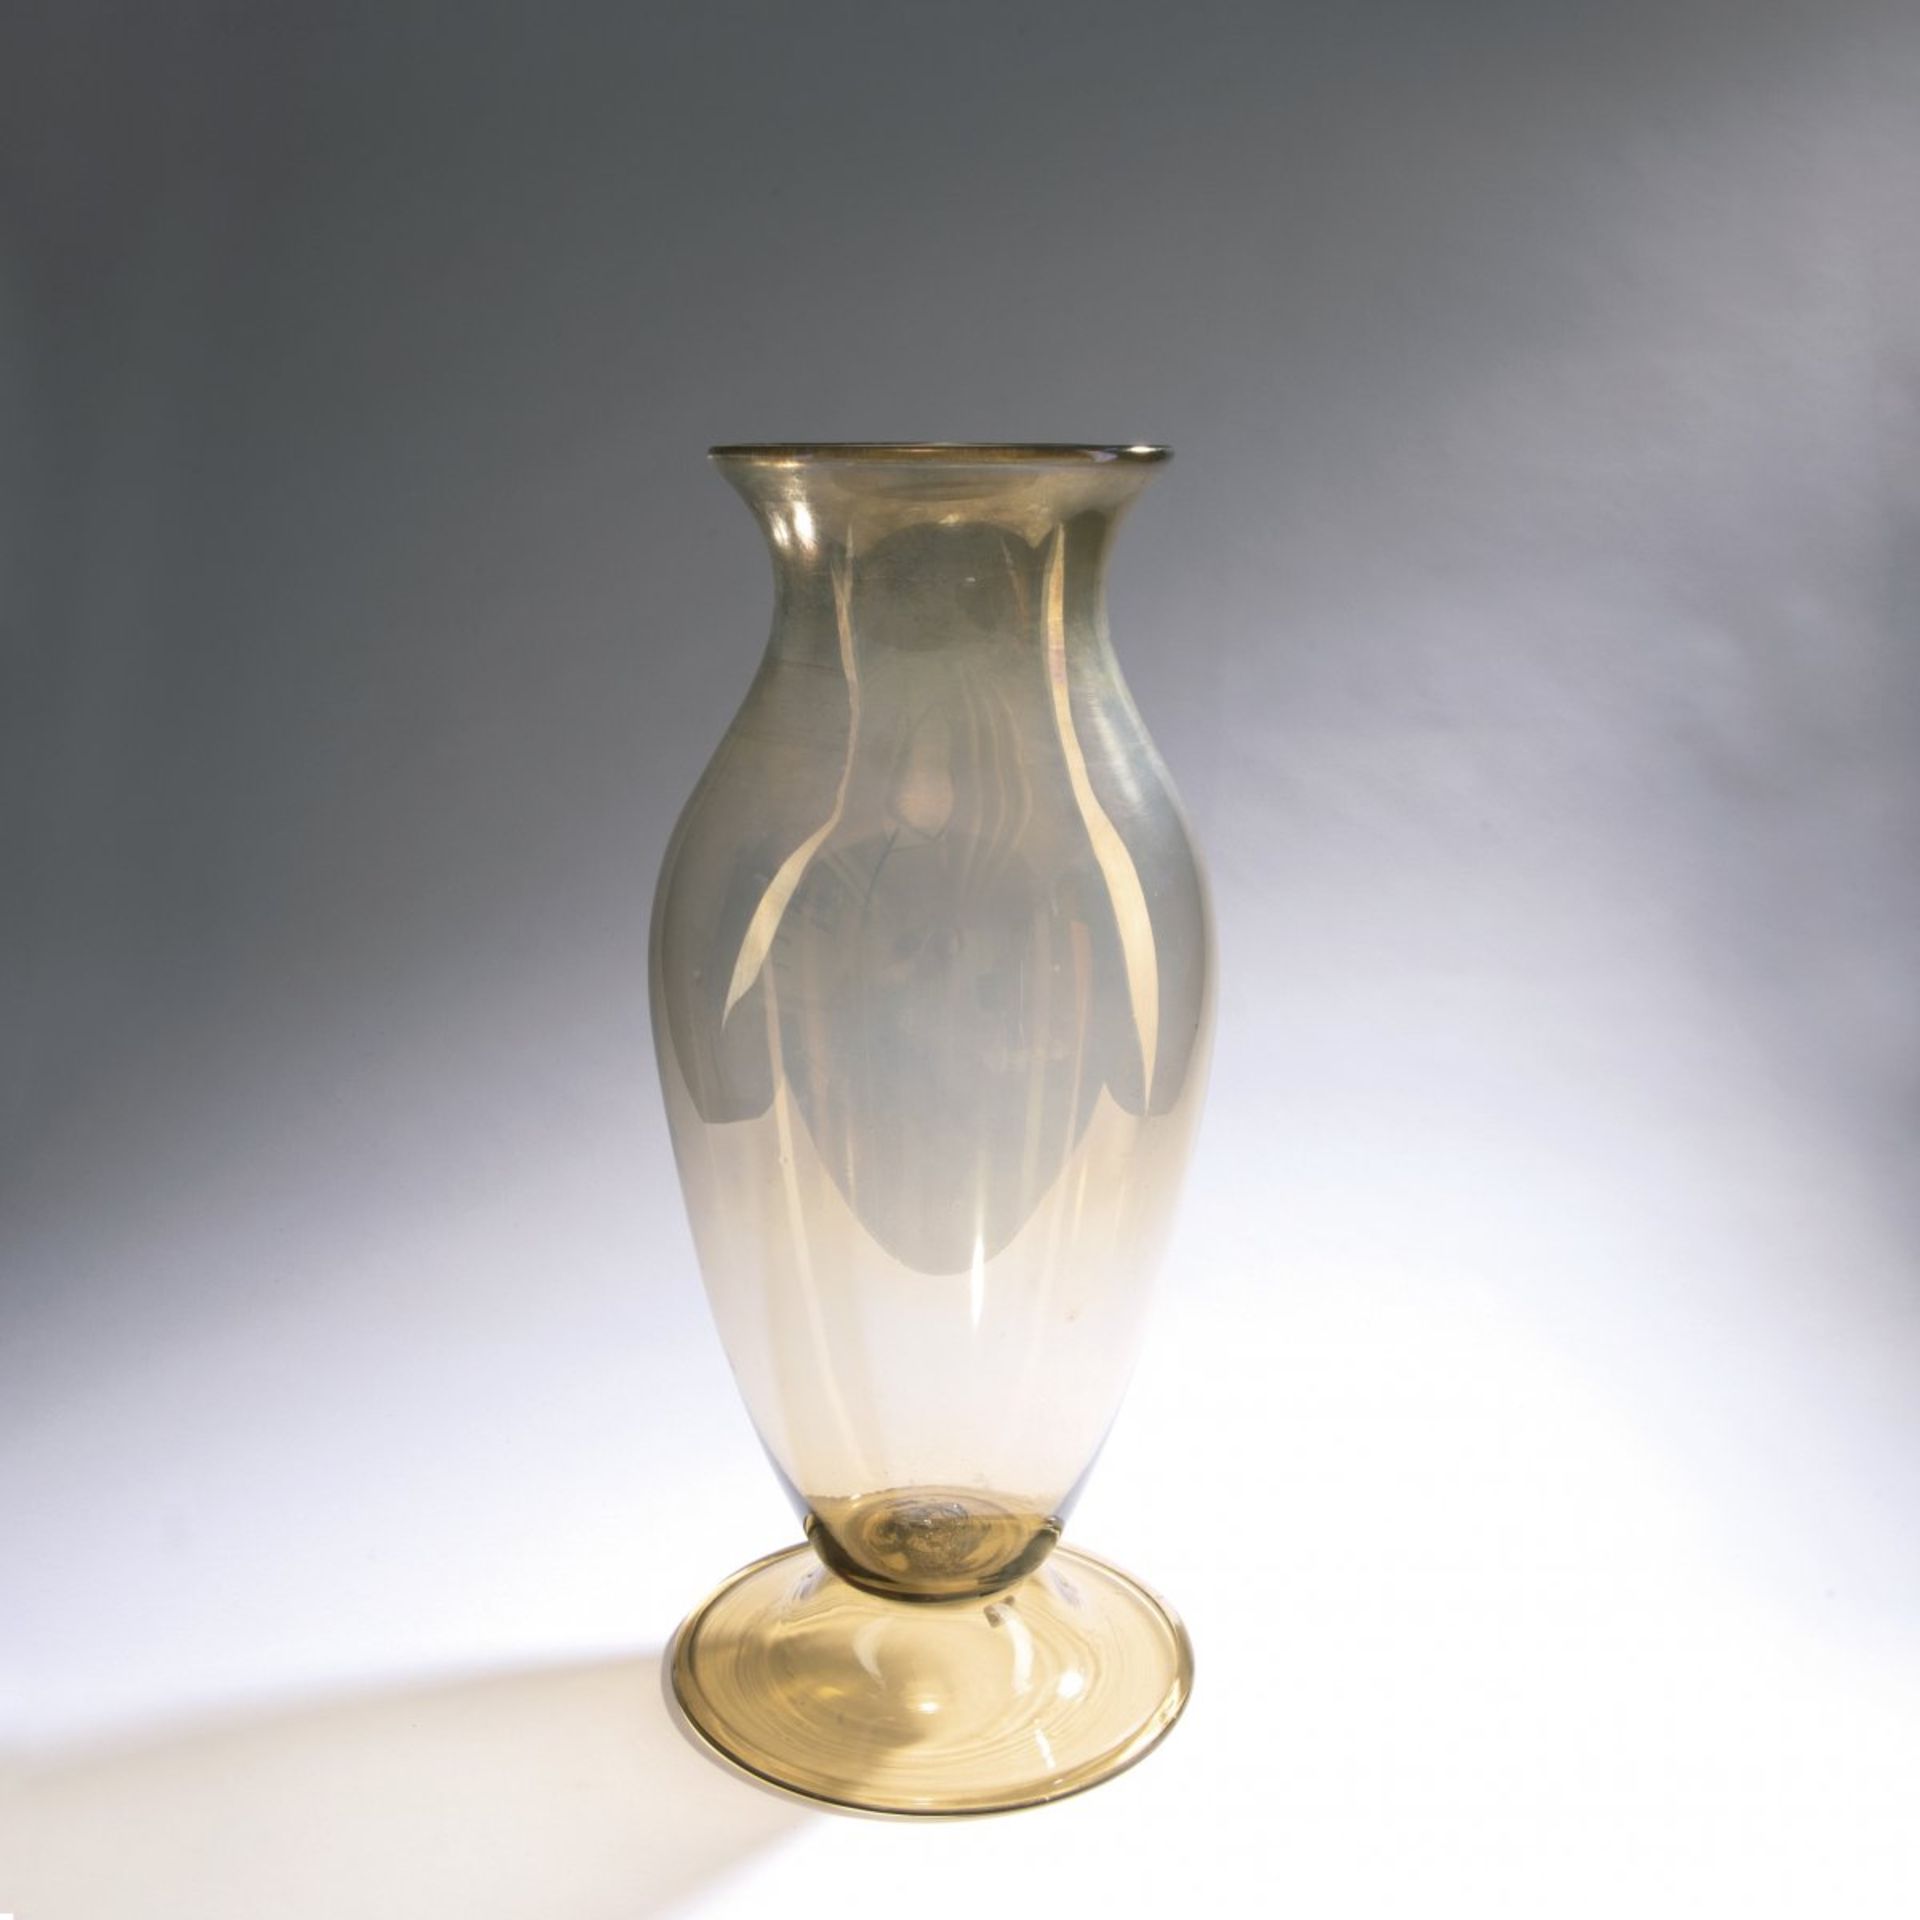 Napoleone Martinuzzi, 'Transparente' vase, c.1925/26